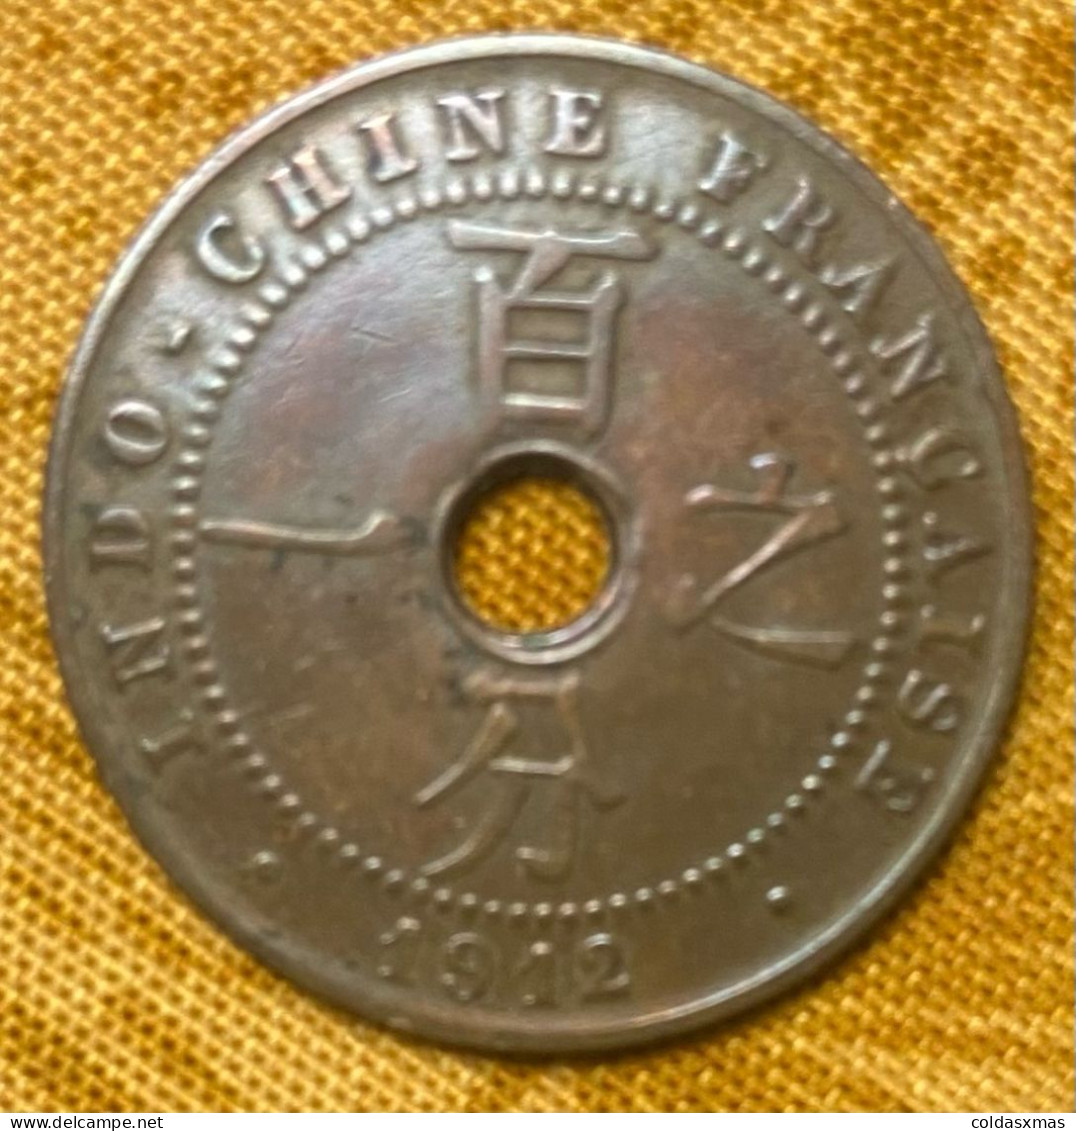 Pièce De 1 Centime 1912 Indochine Trouée Perçée - 1 Centime